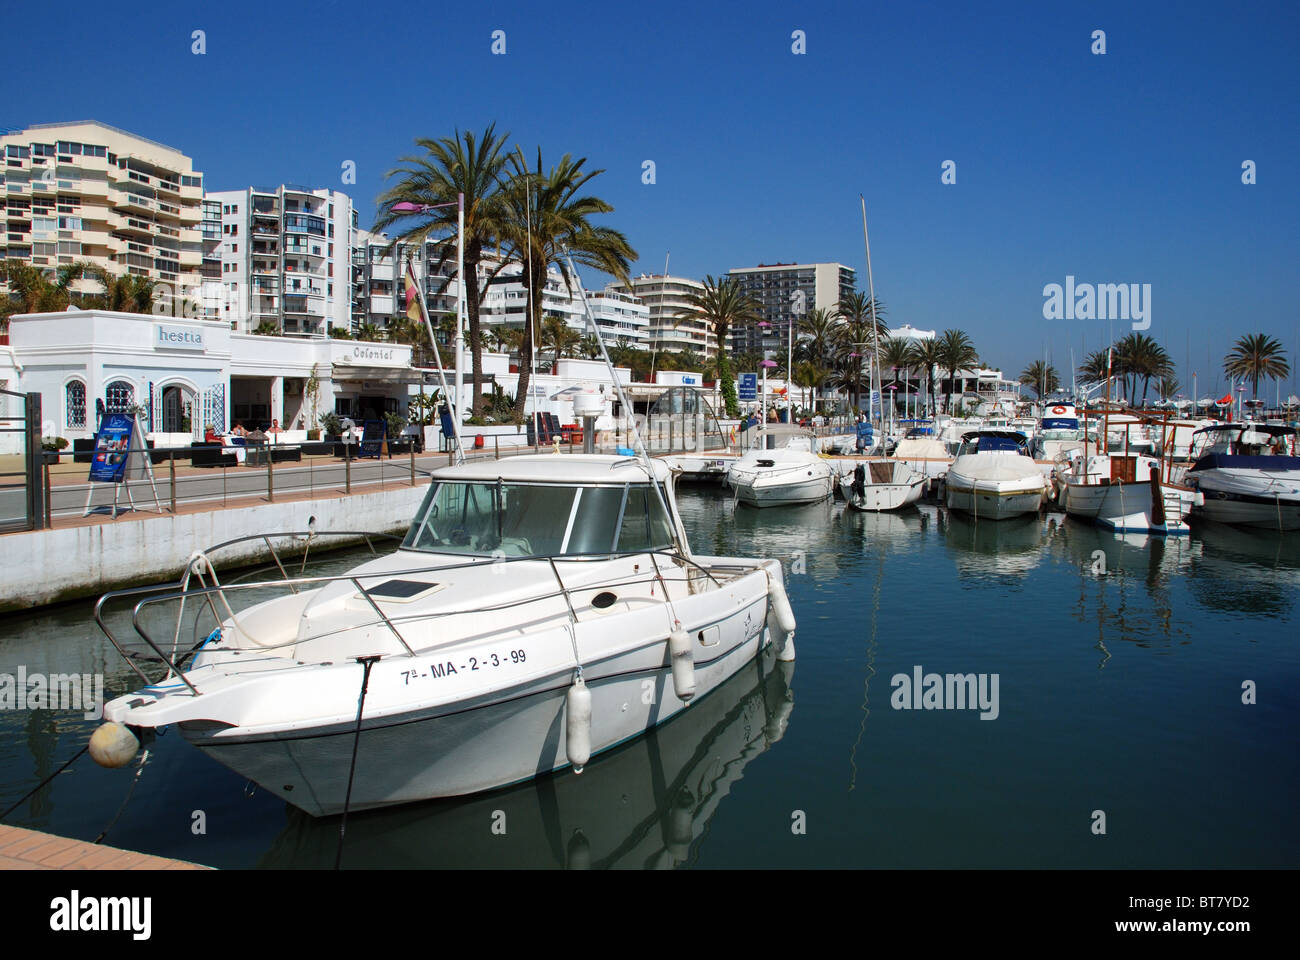 Boats in the marina, Marbella, Costa del Sol, Malaga Province ...